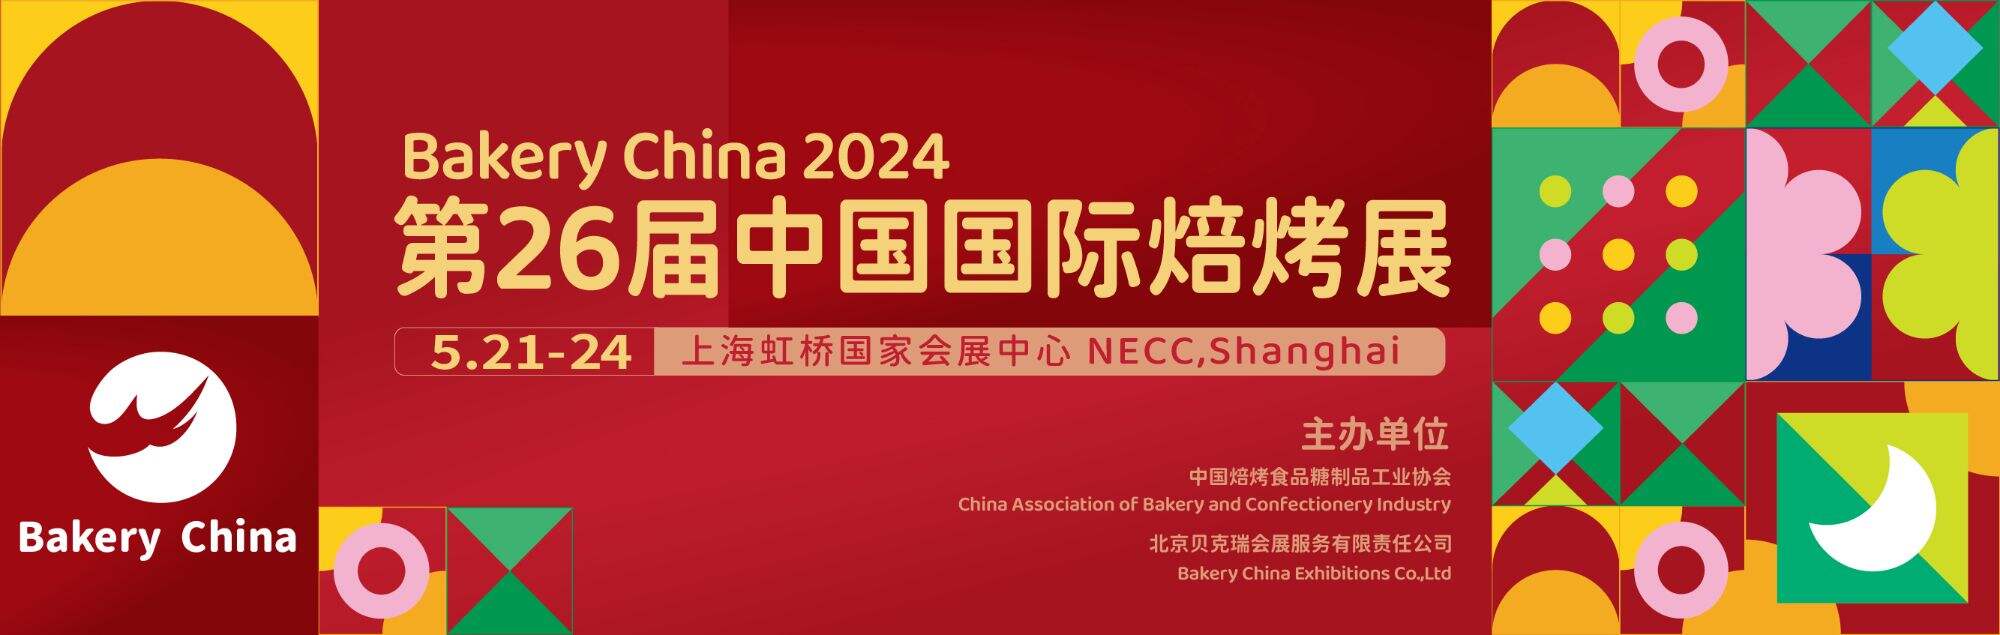 Aperçu de l'exposition : Bakery China 2024 du 21 au 24 mai à Shanghai